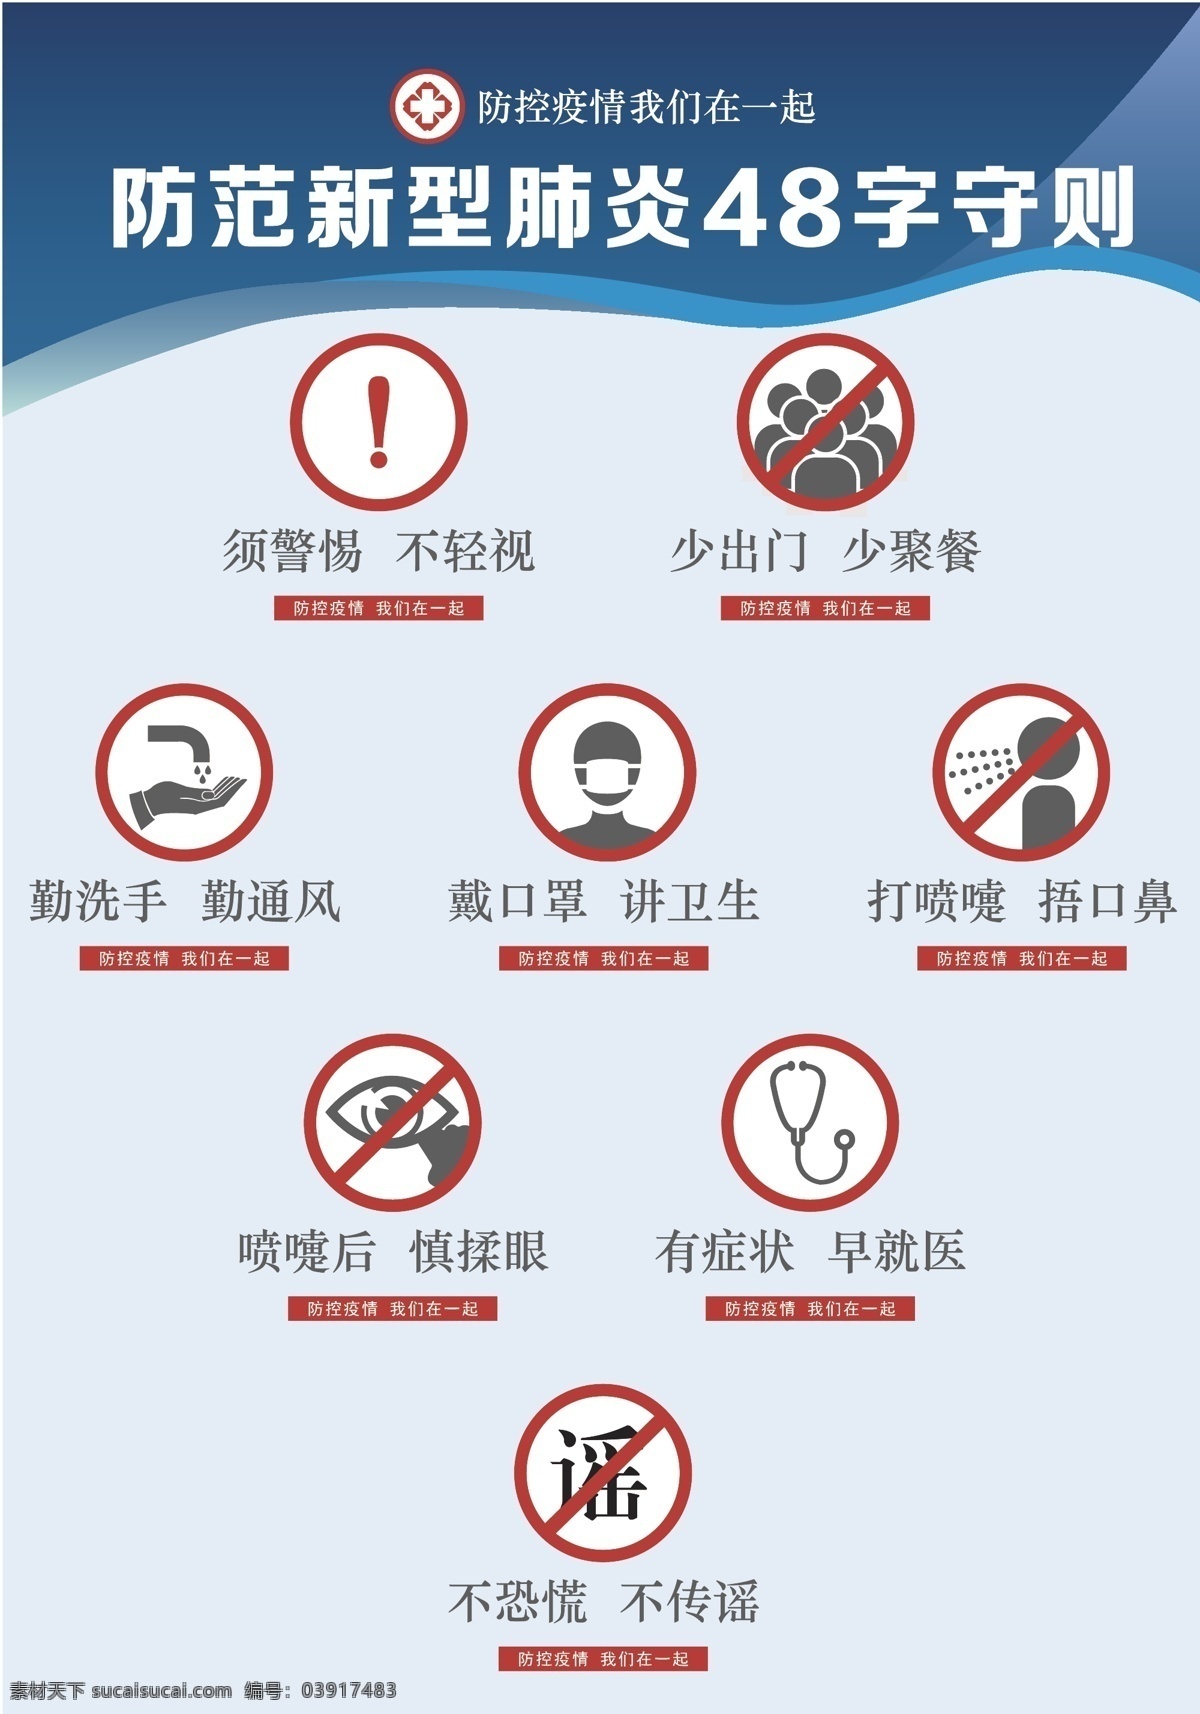 上海市 防范 新型 肺炎 字 守则 新型肺炎 48字守则 海报